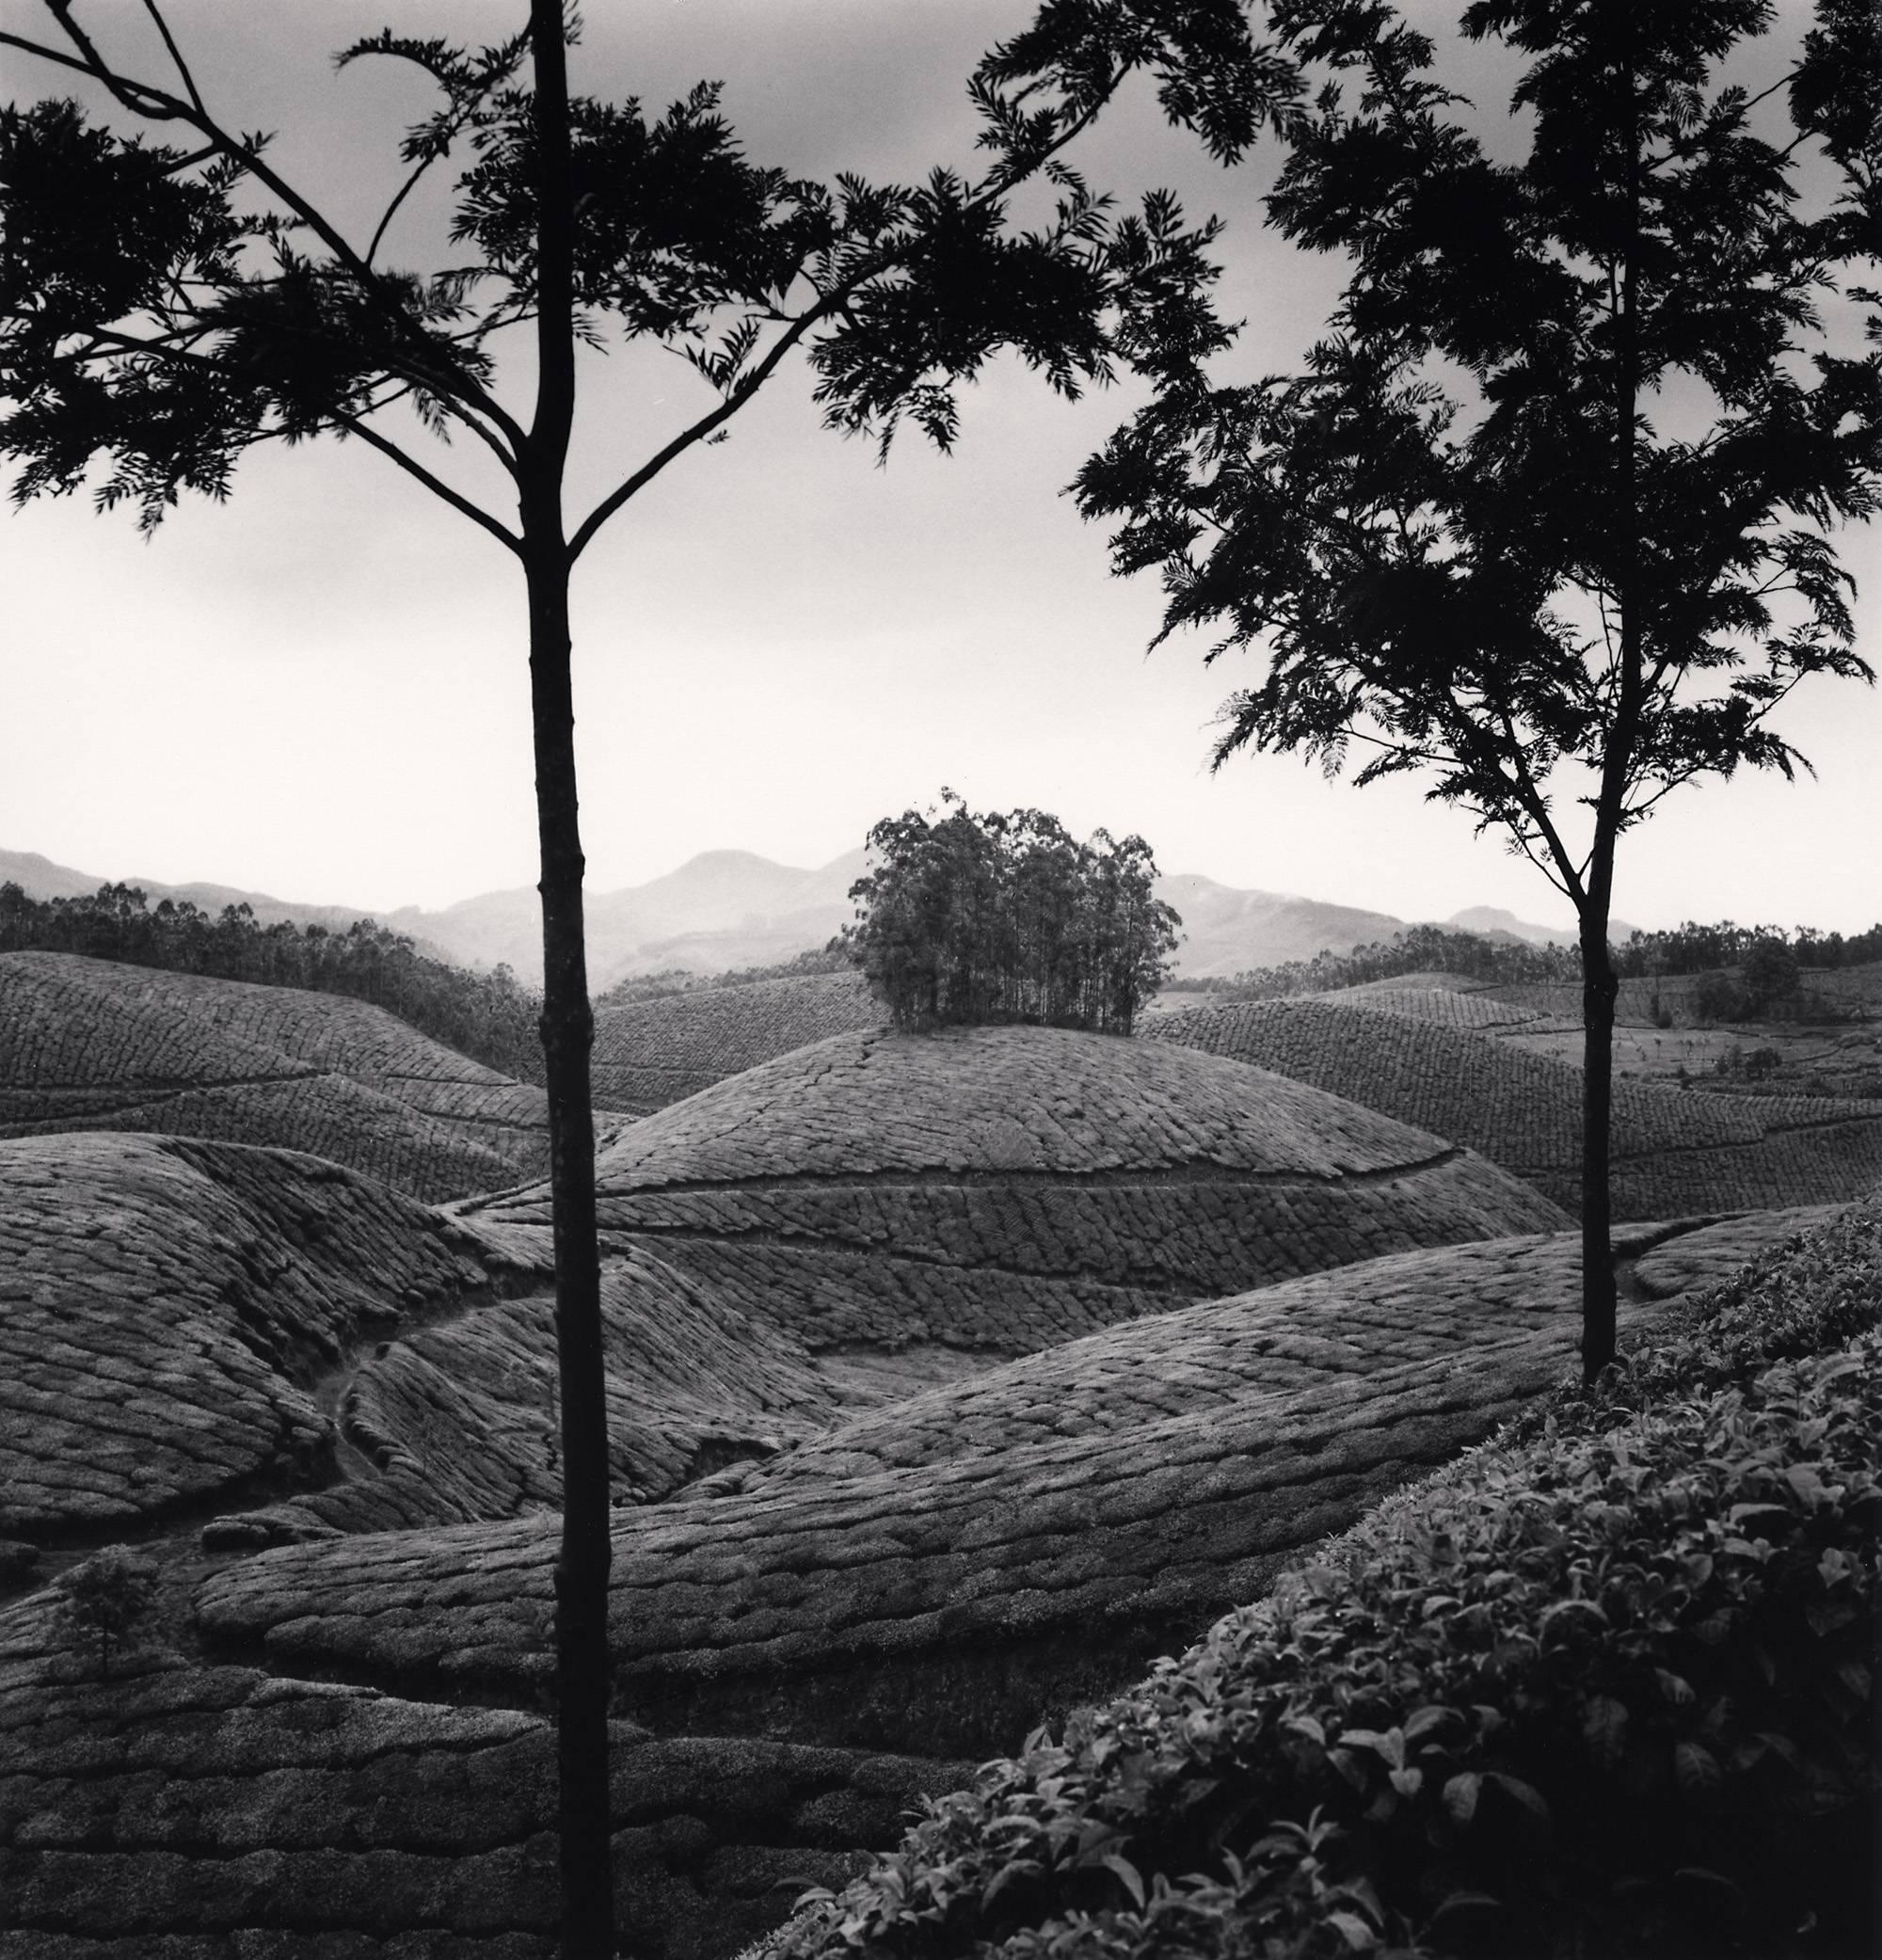 Michael Kenna Black and White Photograph – Tee-Nachlässe, Studie 1, Munnar, Indien